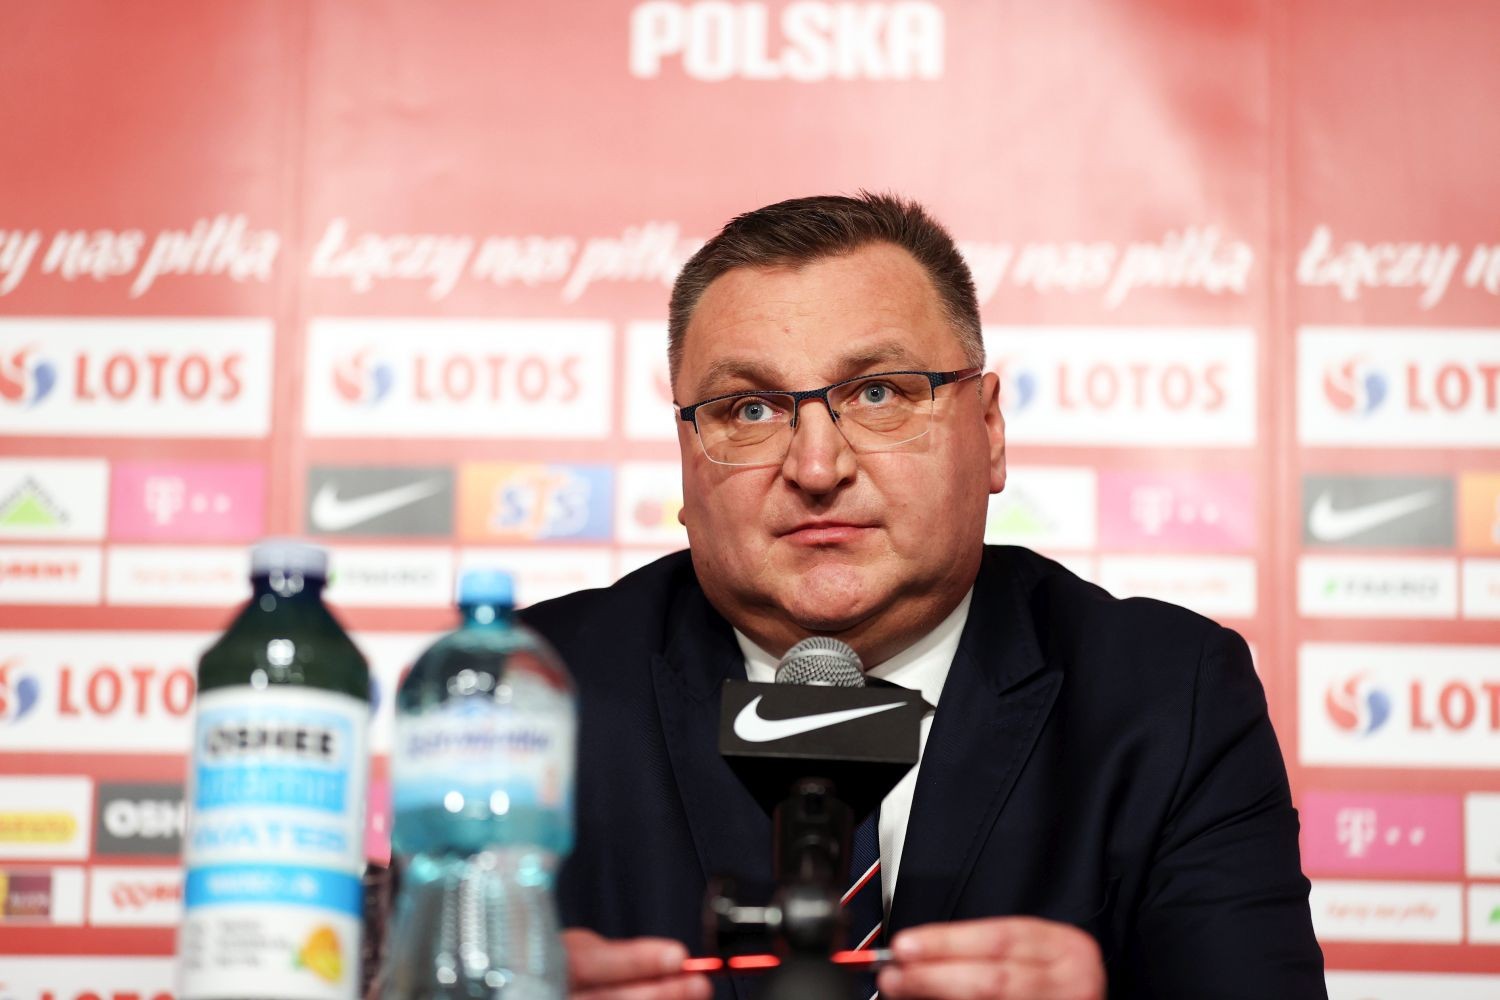 Reprezentacja Polski: Czesław Michniewicz szykuje niespodzianki na mecz z Rosją